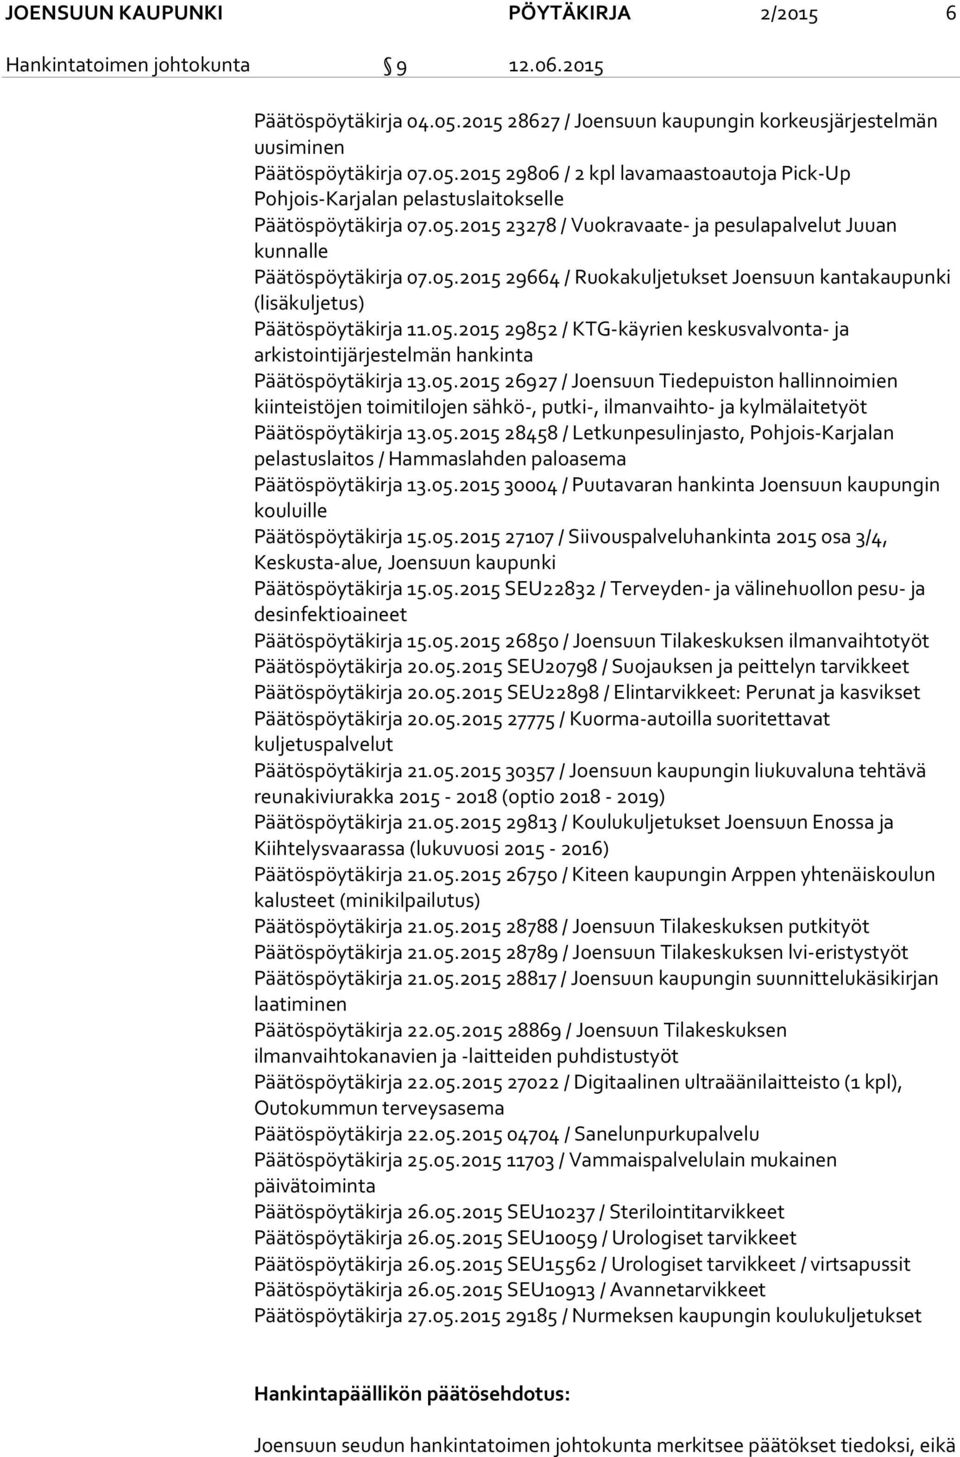 05.2015 29664 / Ruokakuljetukset Joensuun kantakaupunki (lisäkuljetus) Päätöspöytäkirja 11.05.2015 29852 / KTG-käyrien keskusvalvonta- ja arkistointijärjestelmän hankinta Päätöspöytäkirja 13.05.2015 26927 / Joensuun Tiedepuiston hallinnoimien kiinteistöjen toimitilojen sähkö-, putki-, ilmanvaihto- ja kylmälaitetyöt Päätöspöytäkirja 13.